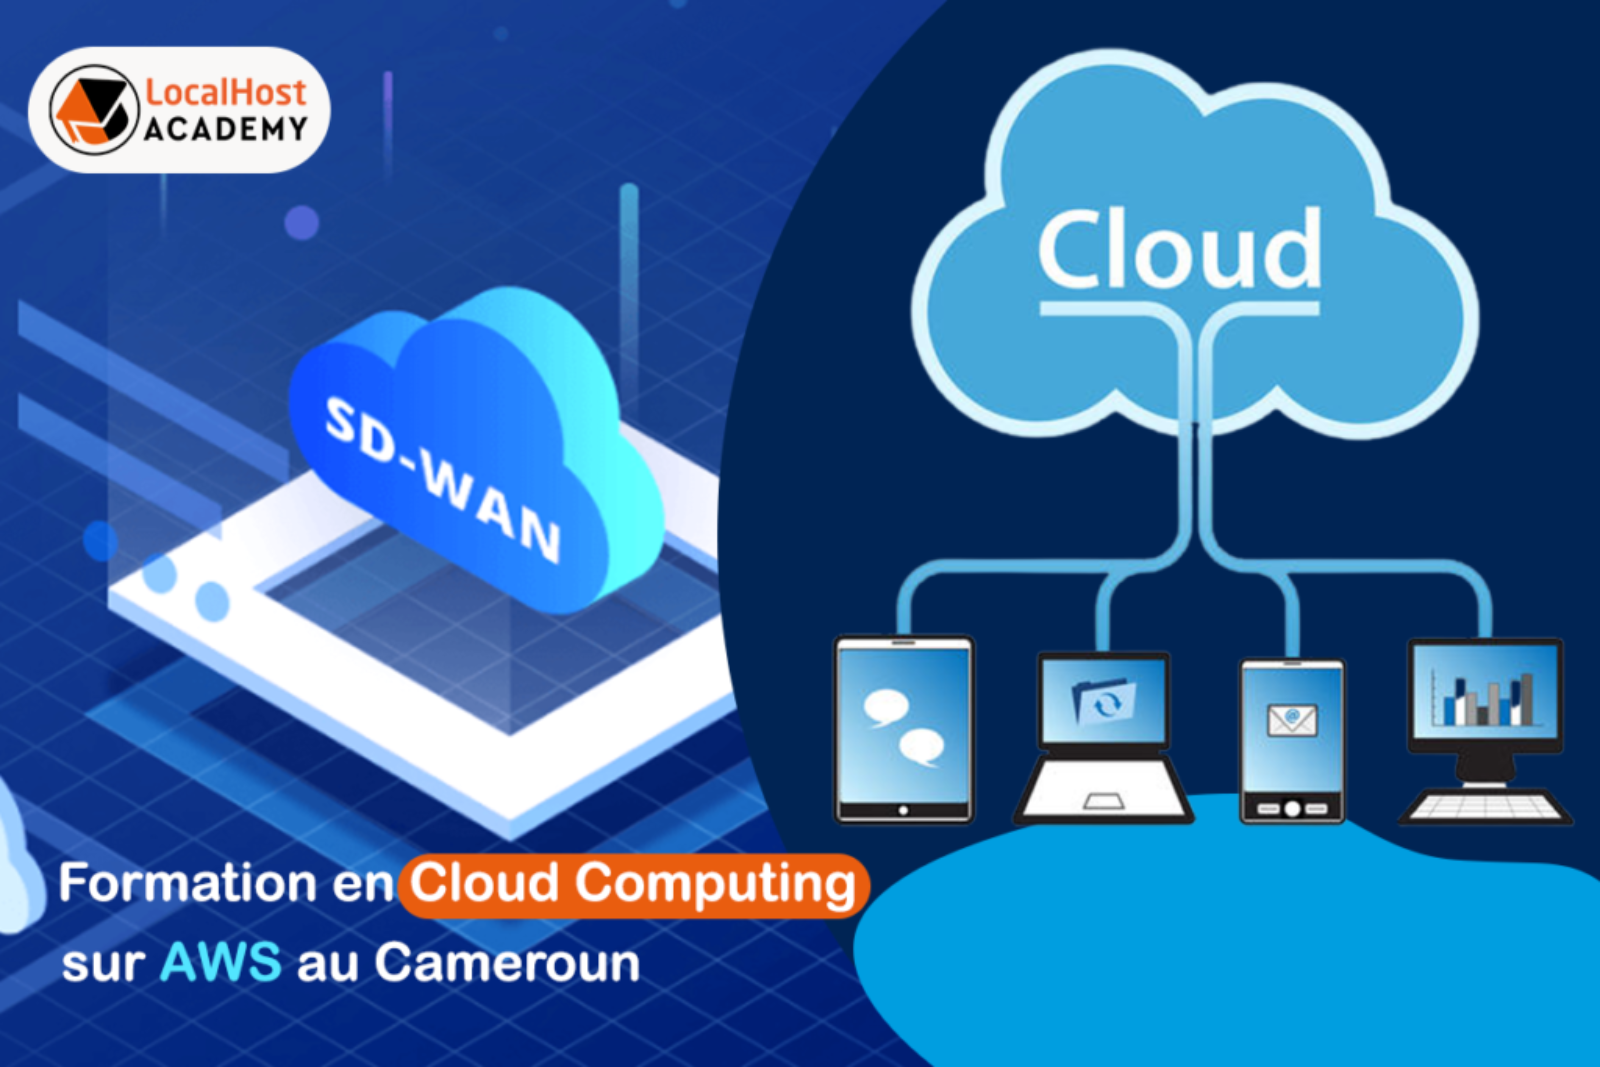 Formation en Cloud Computing sur AWS au Cameroun